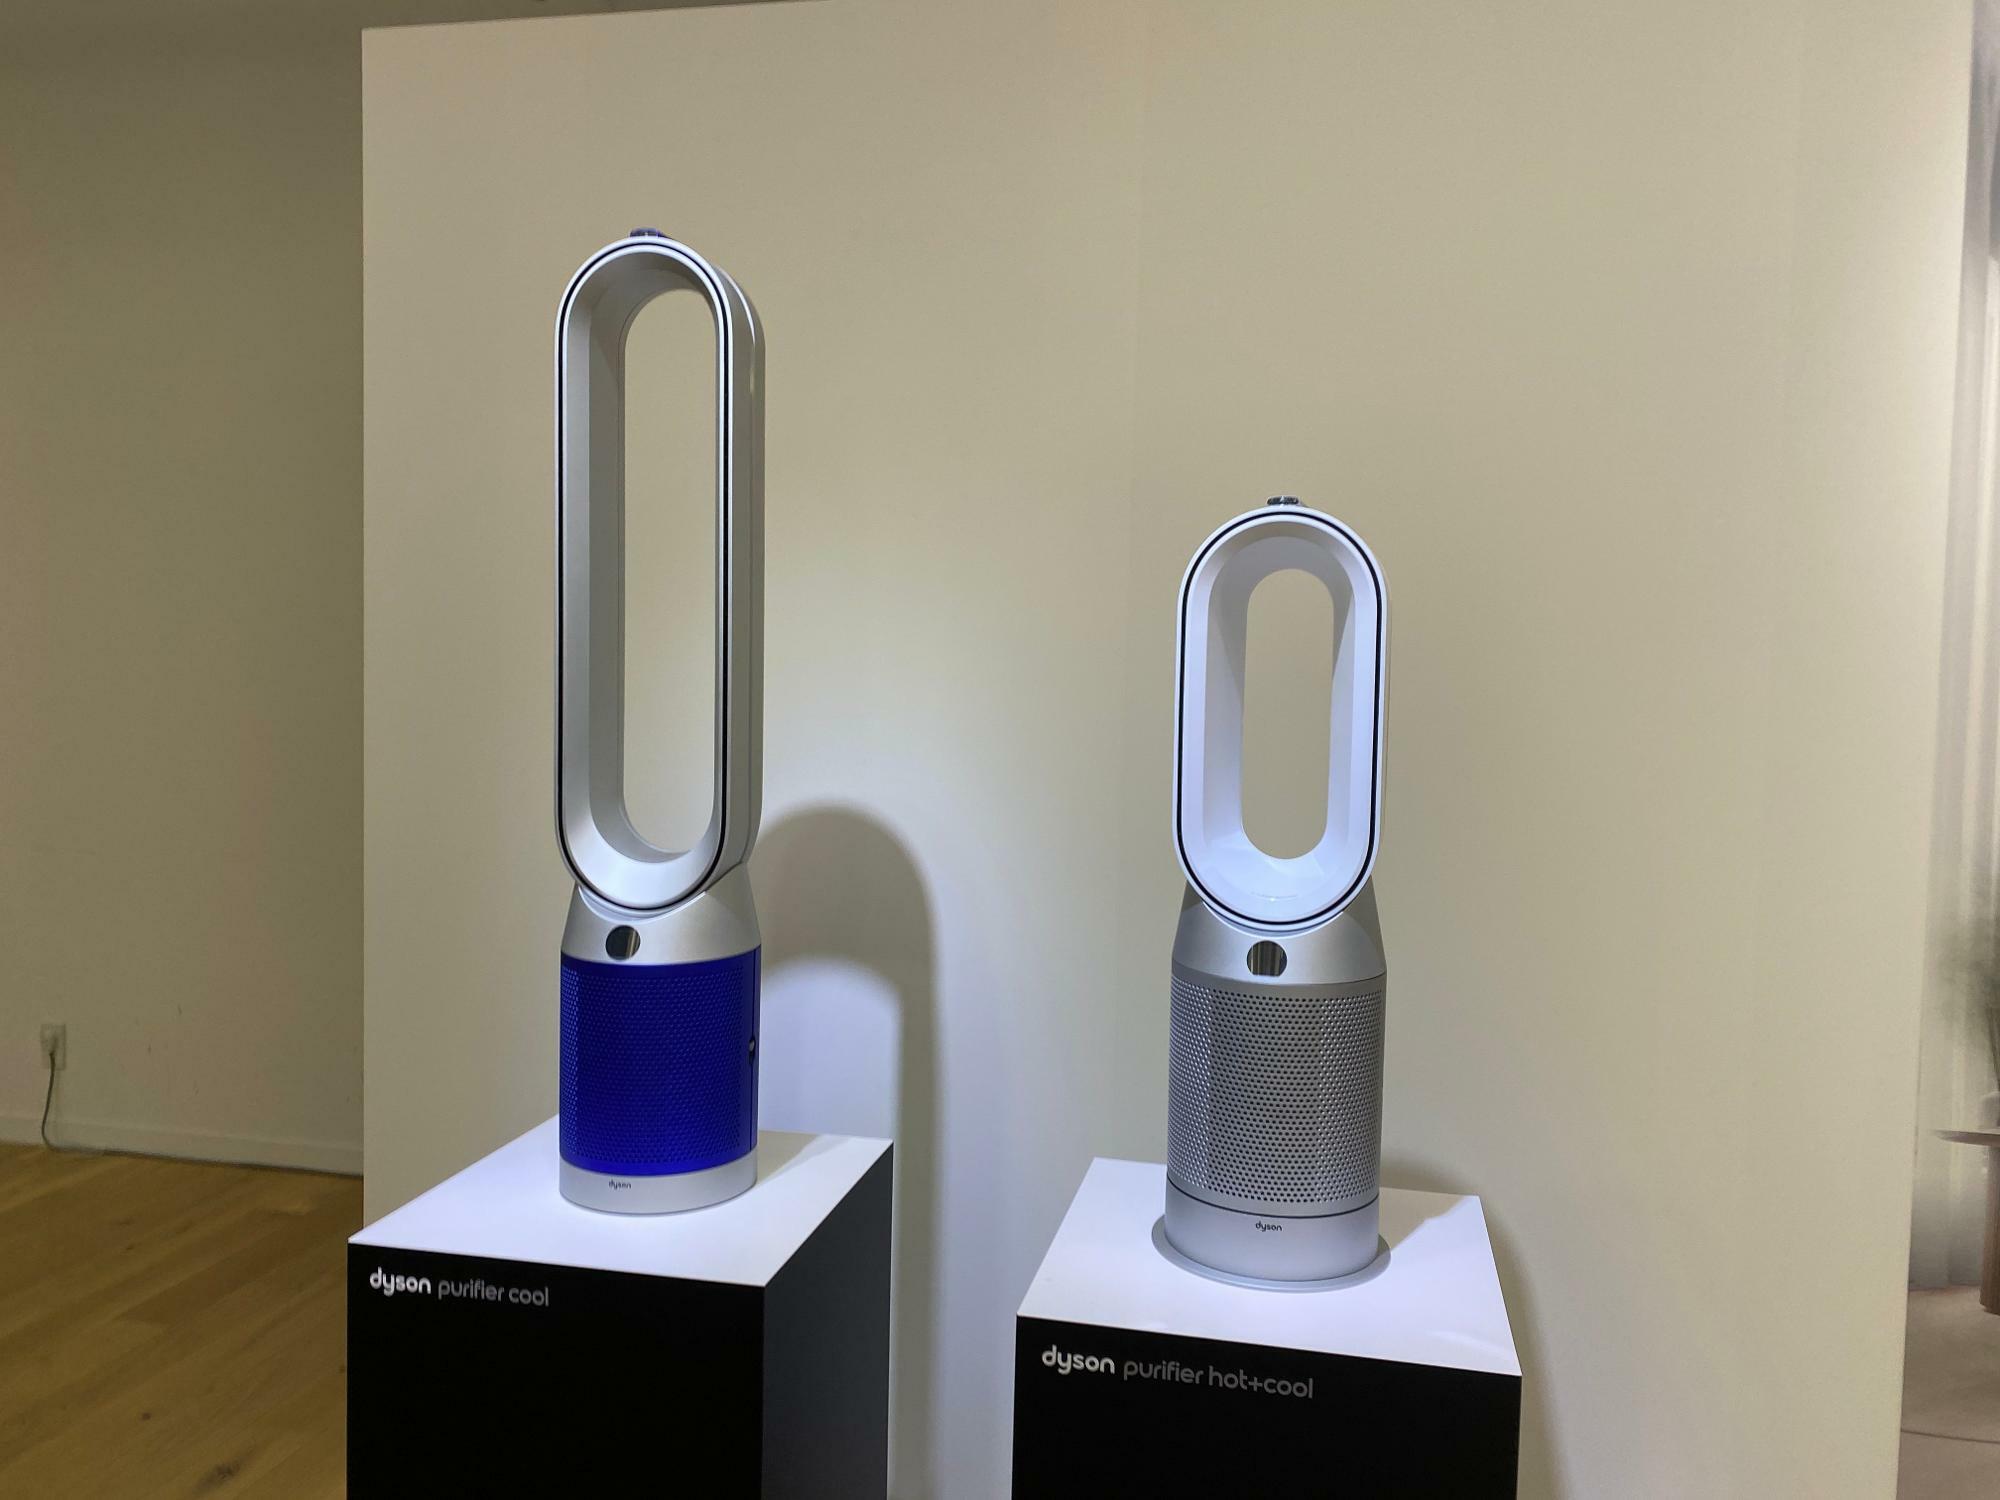 左が『Dyson Purifier Hot+Cool 空気清浄ファンヒーター』、右が『Dyson Purifier Cool 空気清浄ファン』